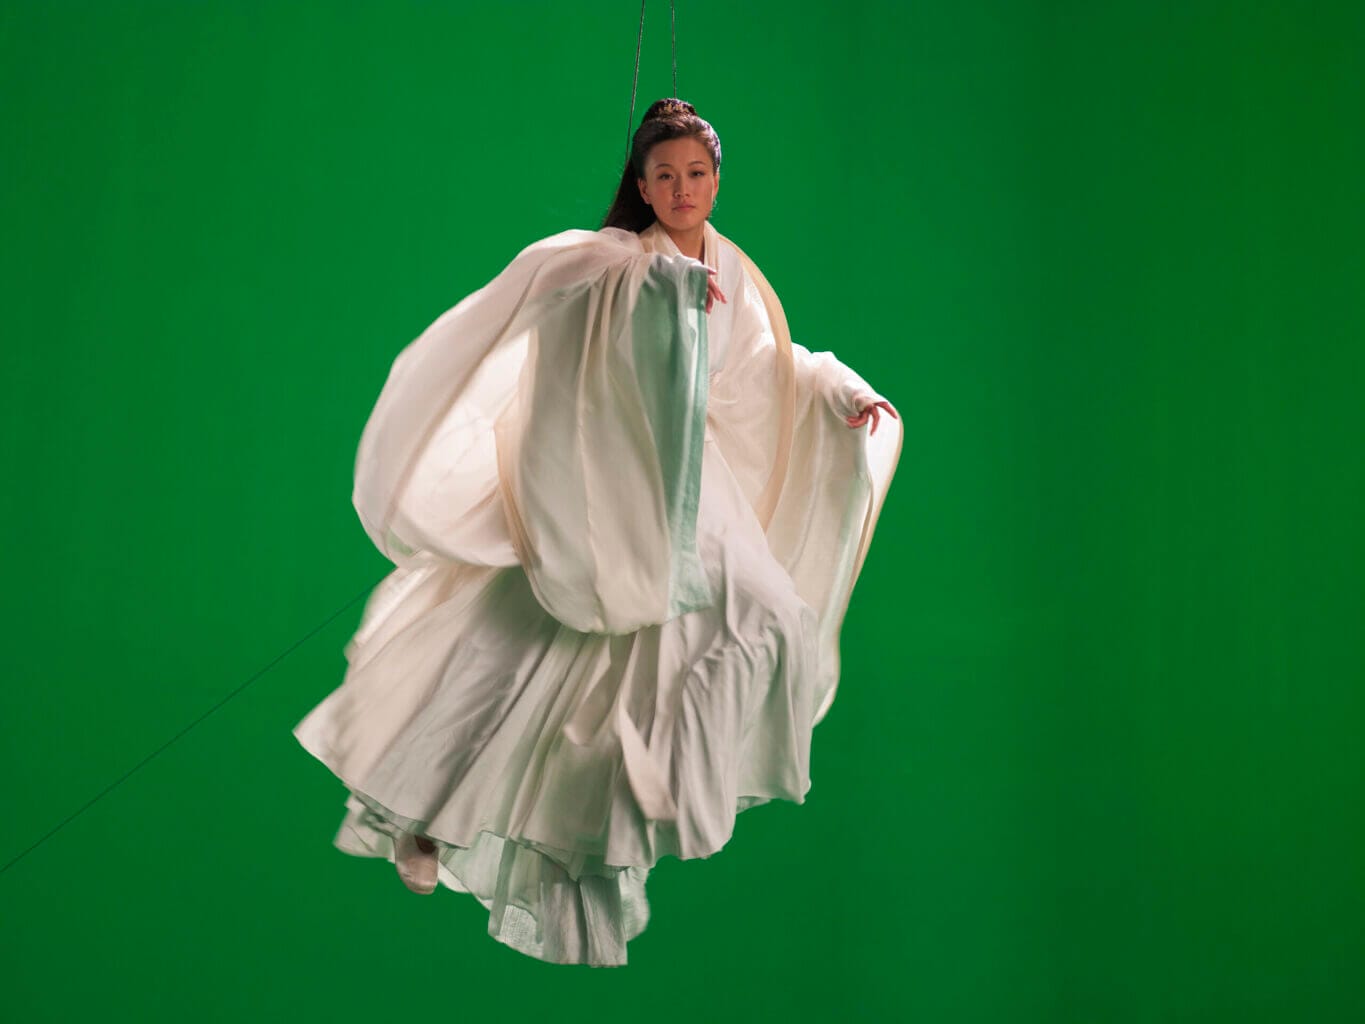 エスパス ルイ·ヴィトン大阪にて、アイザック・ジュリアンによる個展「Ten Thousand Waves」が3月27日より開催。中華圏の芸術家たちとのコラボレーションを通じて制作された巨大なビデオインスタレーション。